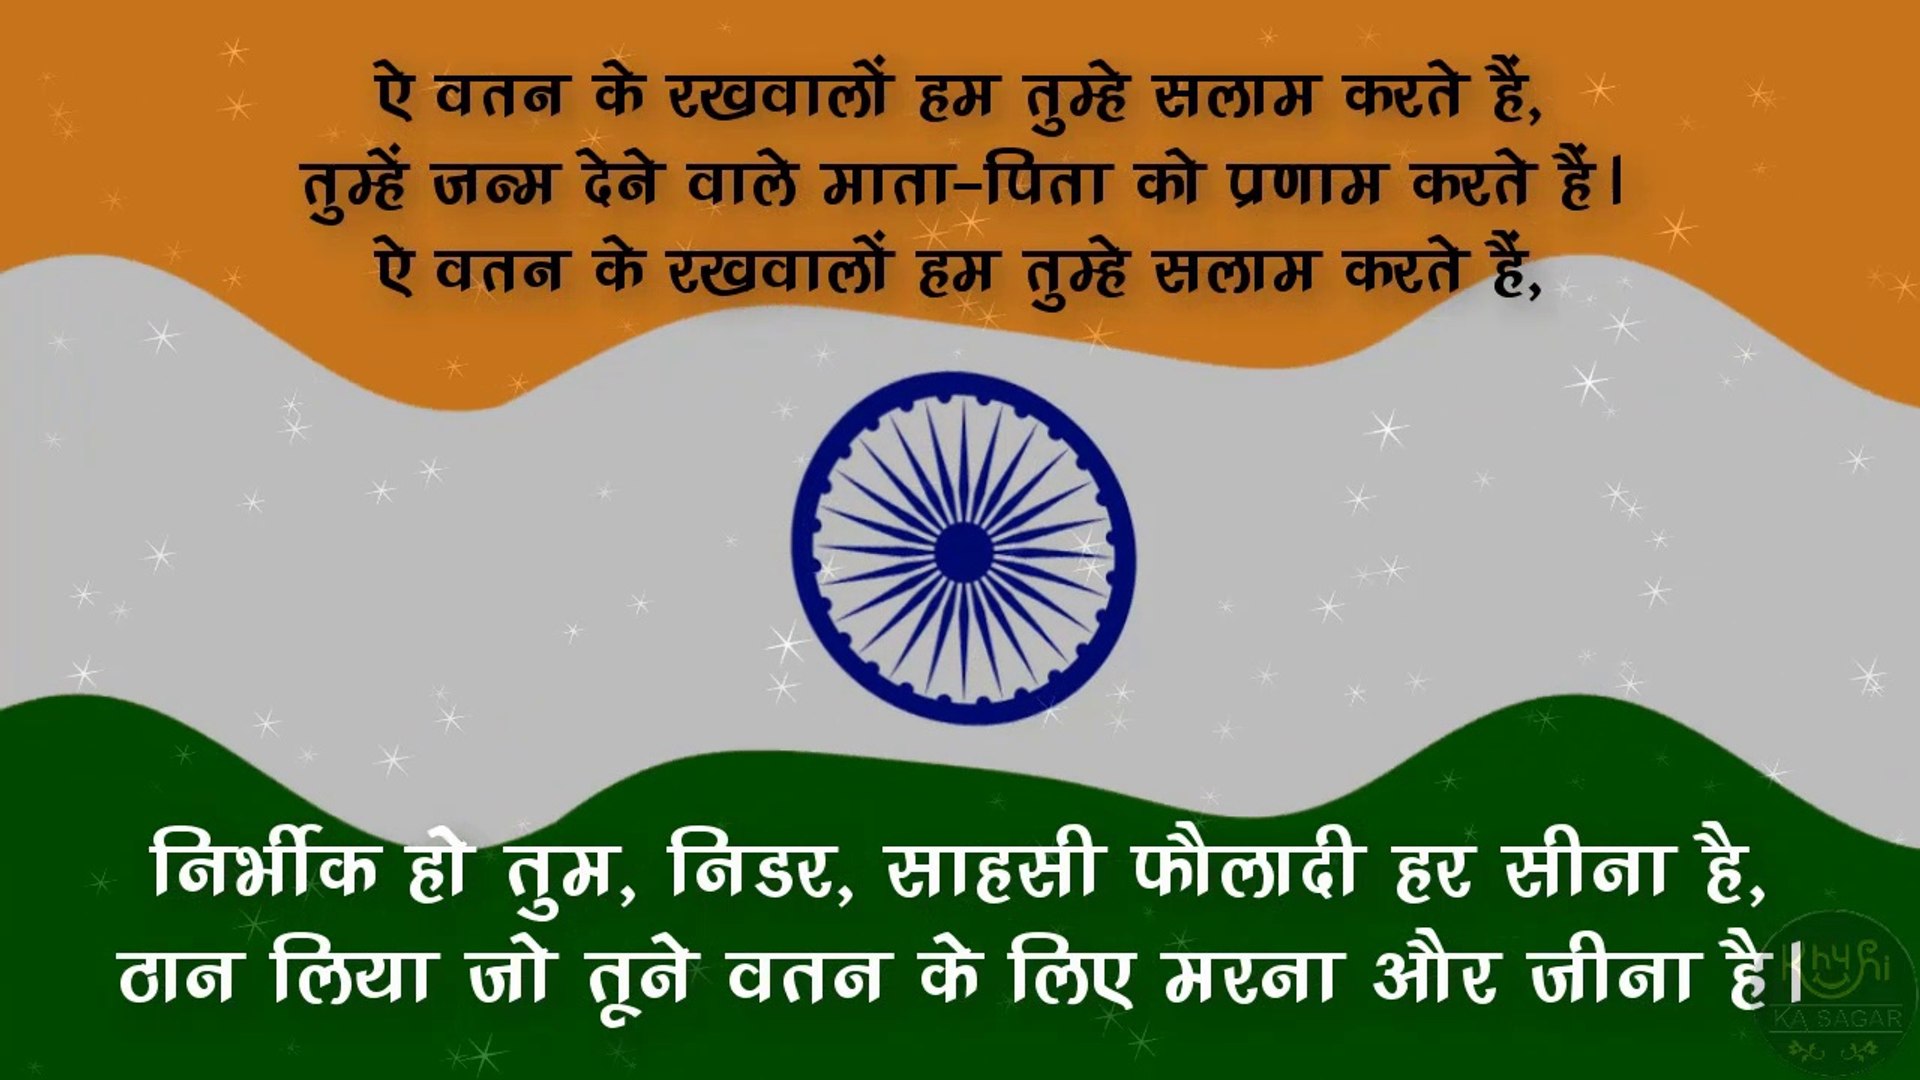 देशभक्ति शायरी | Republic day | 2019 Desh Bhakti Shayari | 26 January  Shayari | by Khushi ka sagar || गणतंत्र दिवस की हार्दिक शुभकामनाएं | Bharat  mata ki jai, Vandematram, Jai hind - video dailymotion